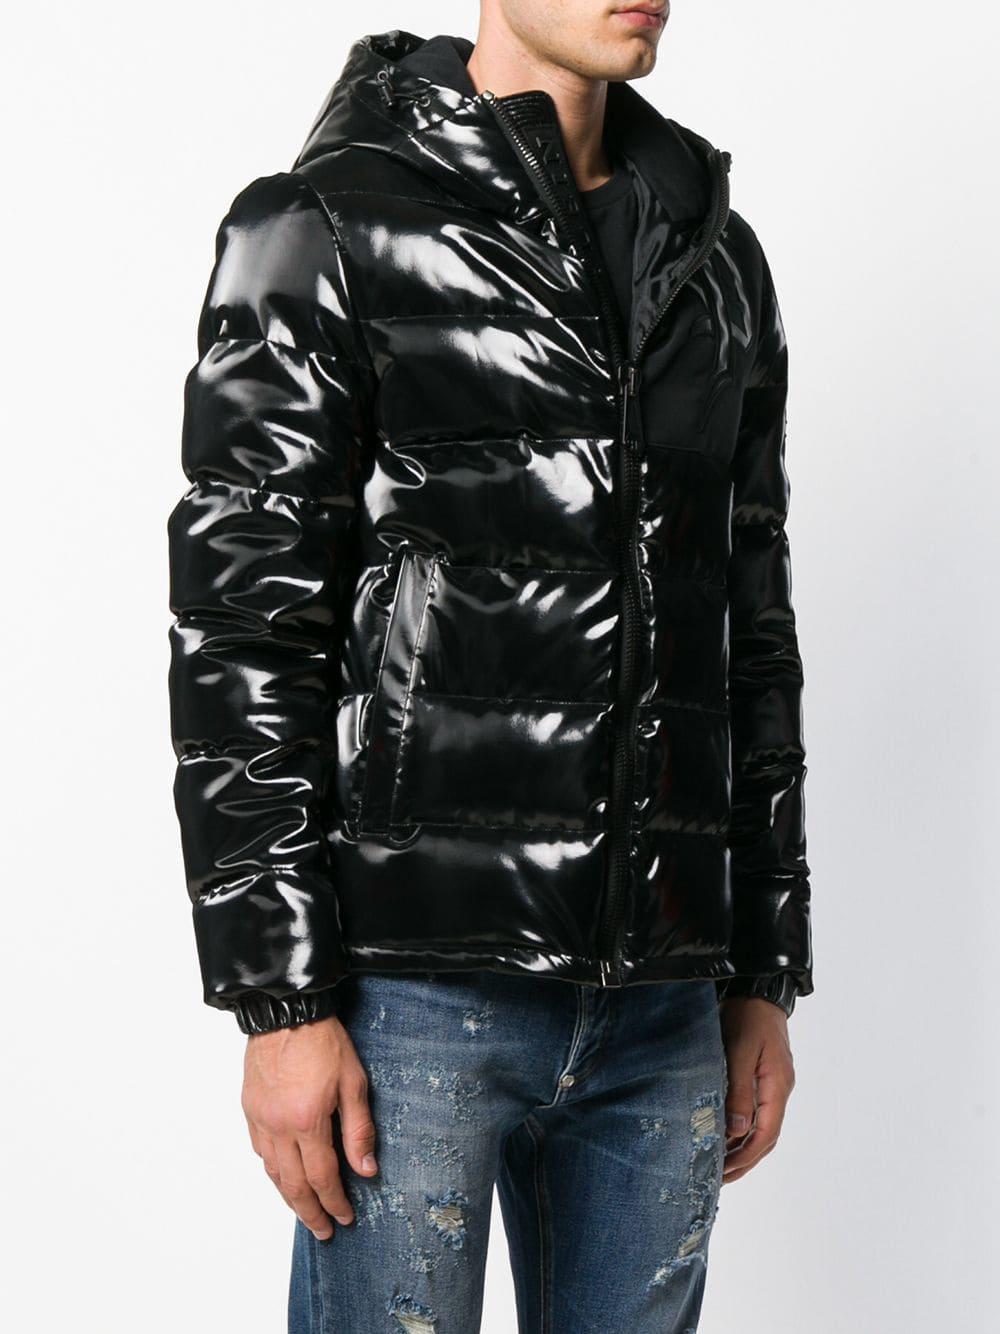 Philipp Plein Vinyl Padded Jacket in Black for Men - Lyst